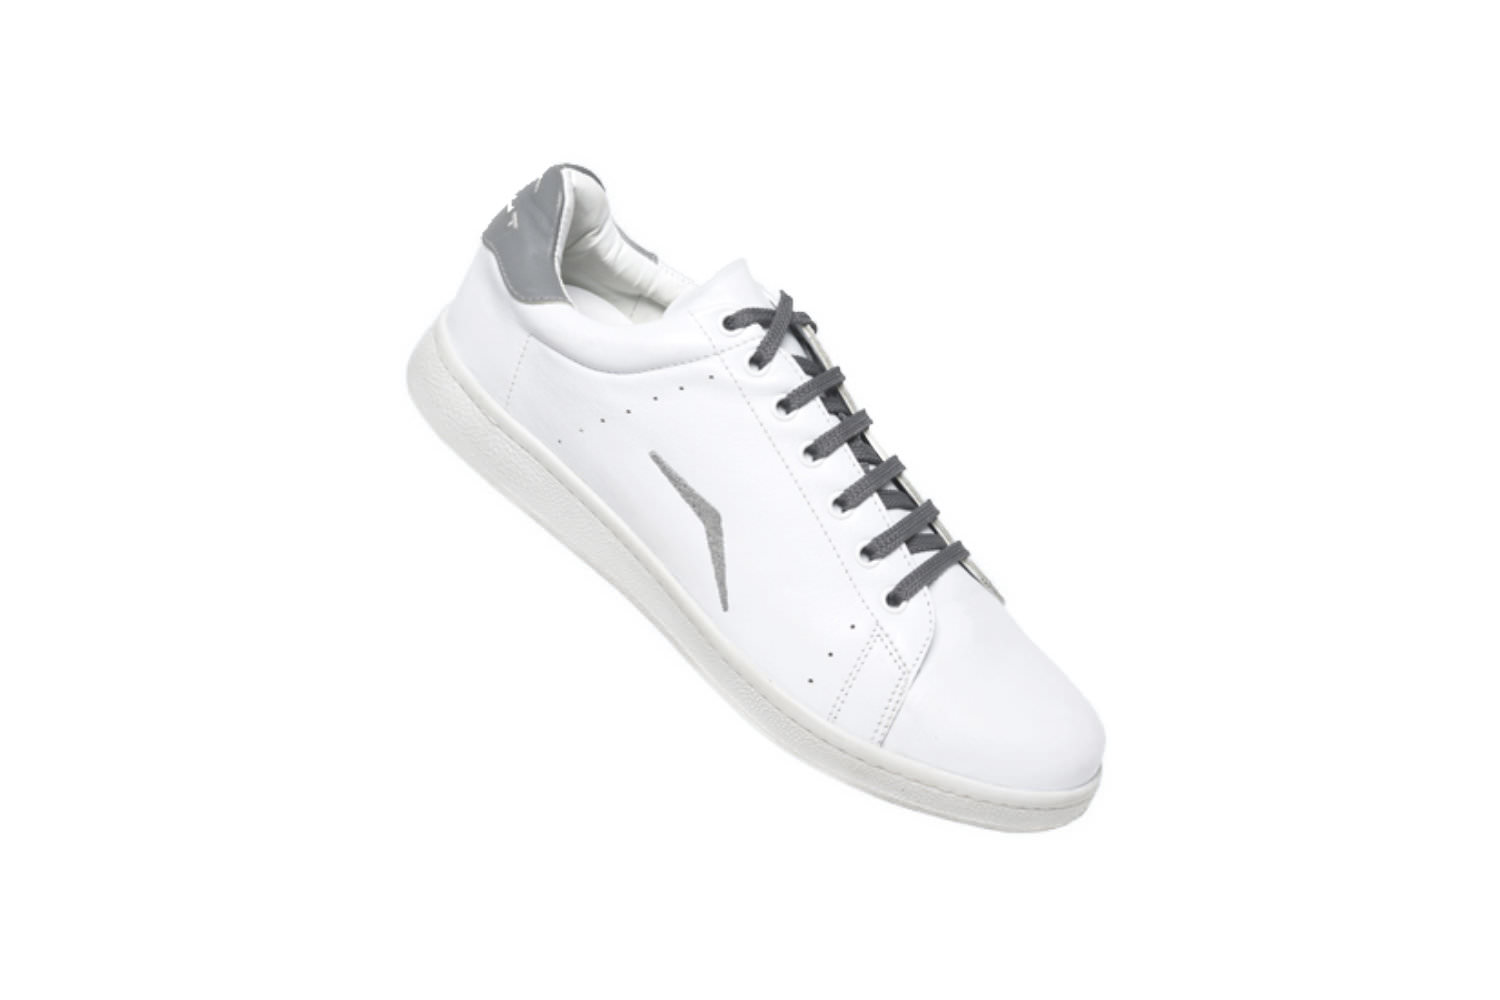 Sneaker für Firmen Tennis weißer Turnschuh personalisiert mit Logo und Stick in grau